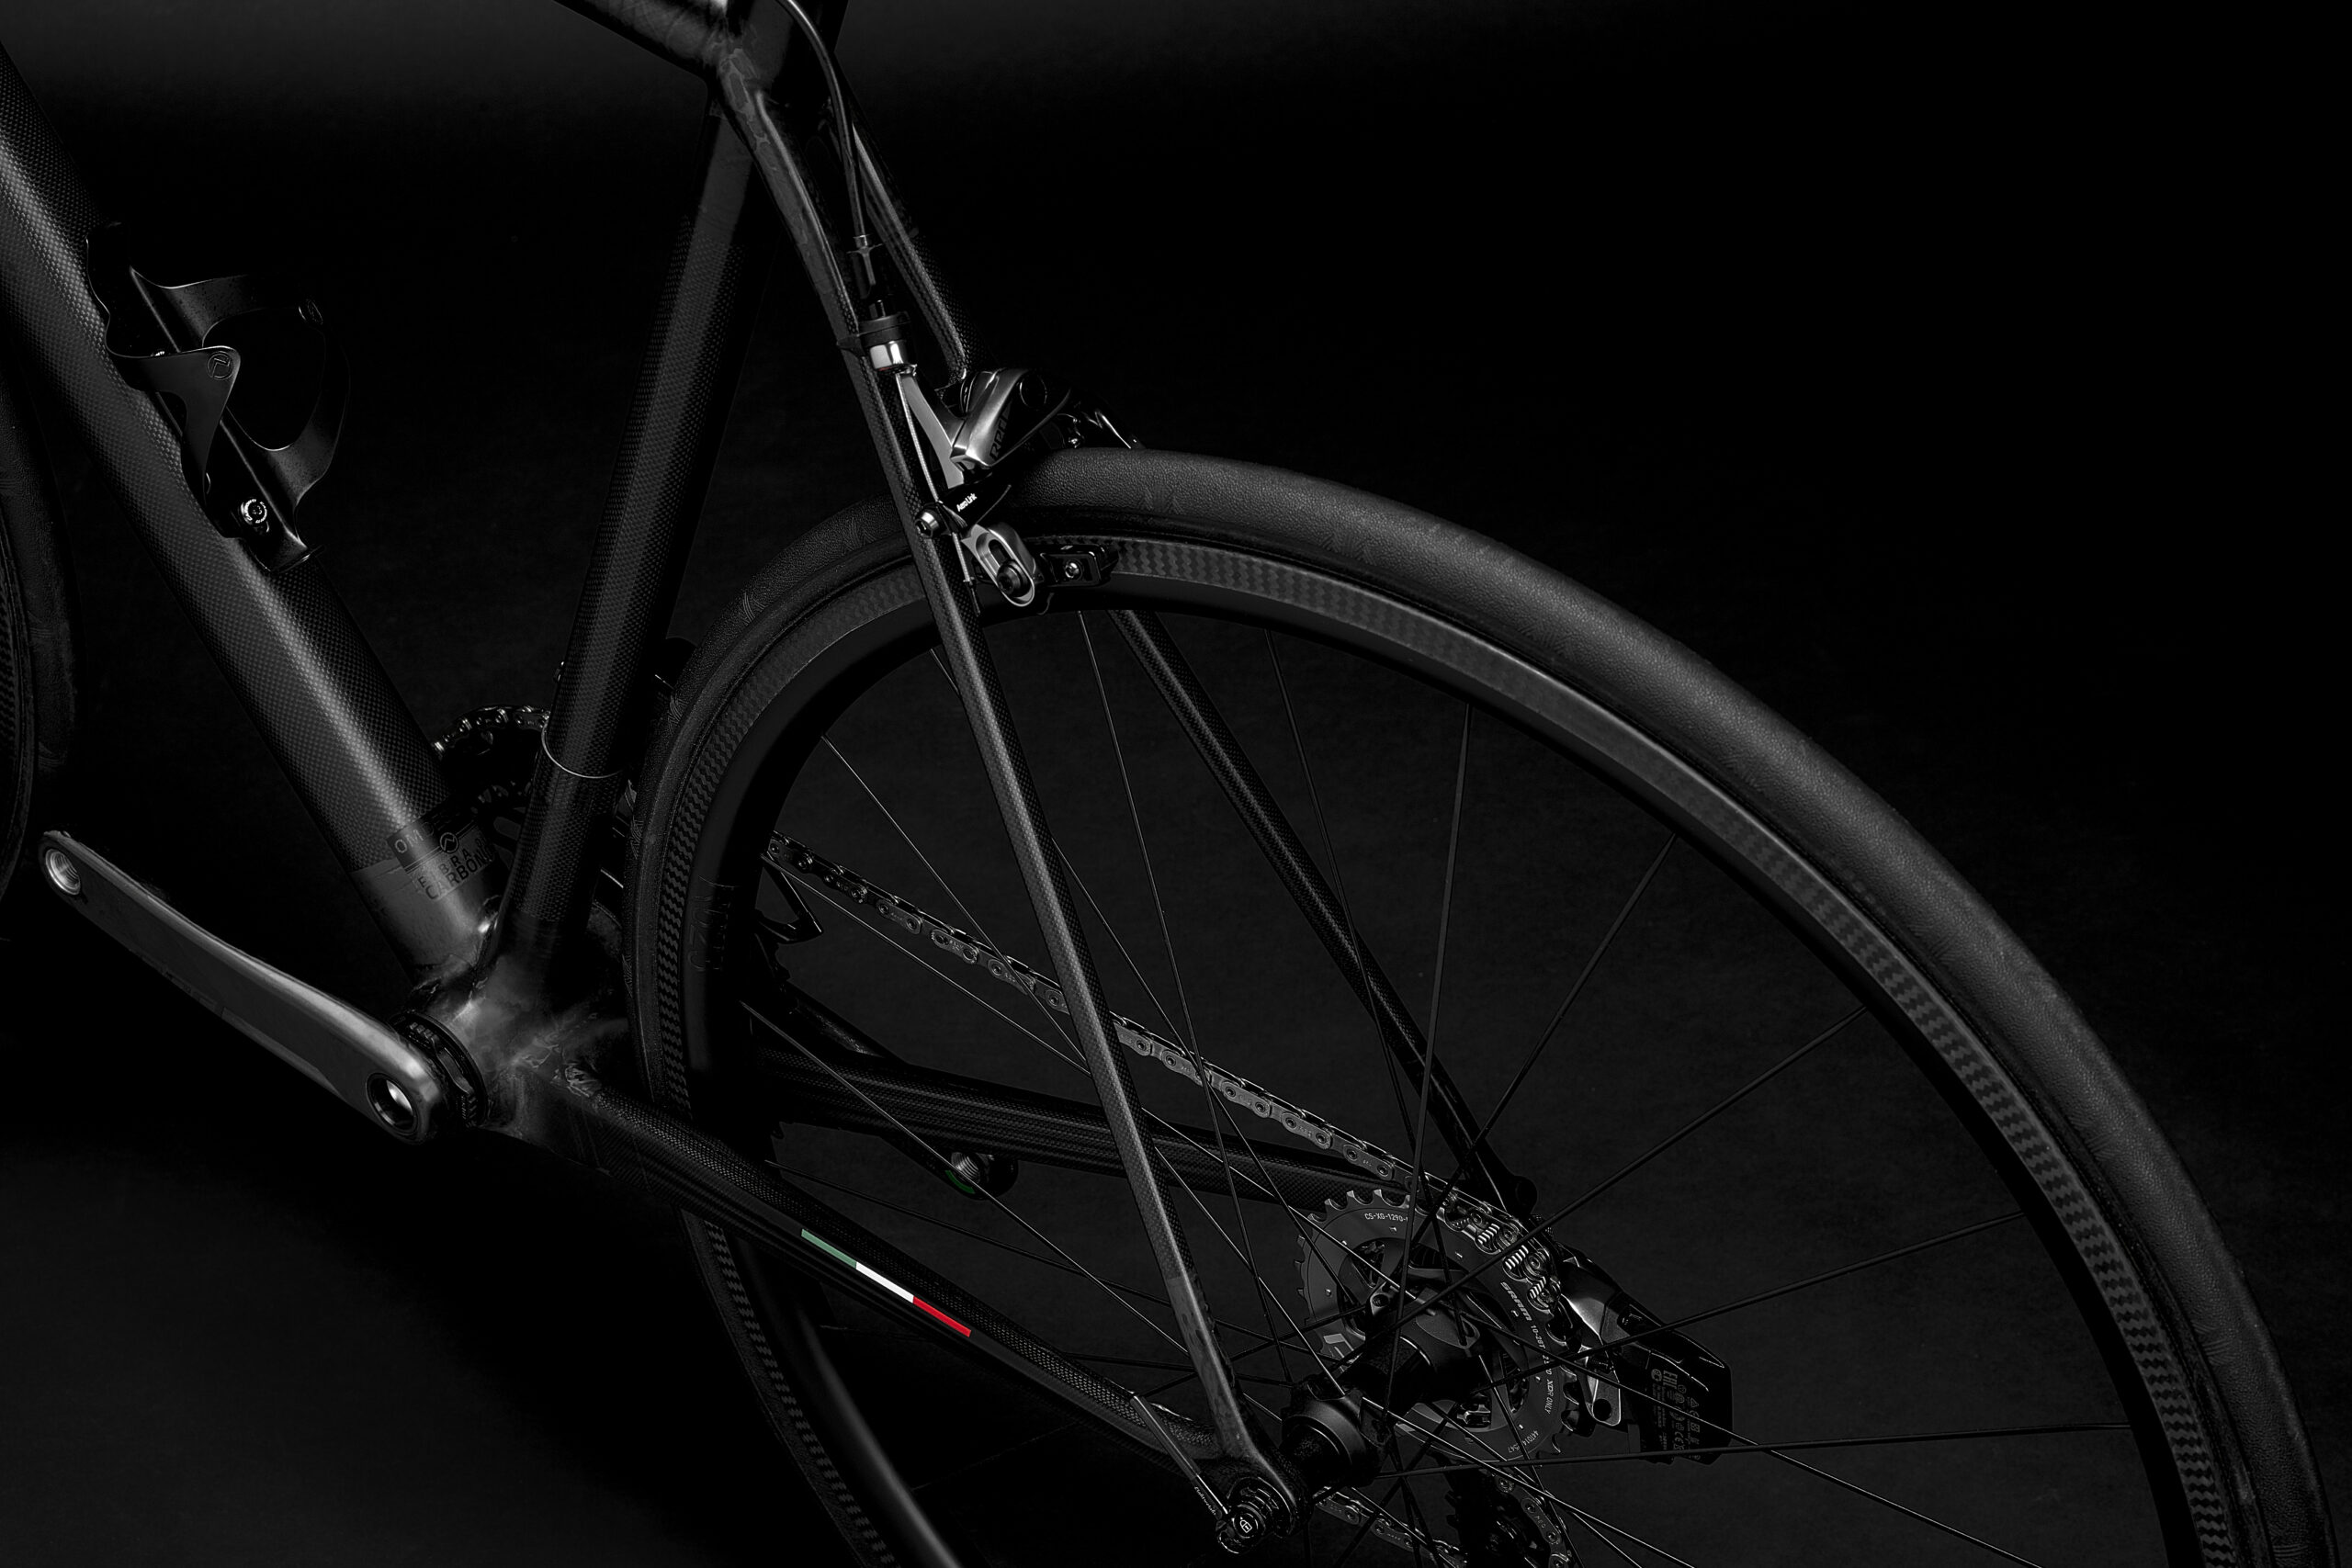 Bicicletta Officine Mattio modello SL in fibra di carbonio, produzione made in italy fotografia dettaglio freno